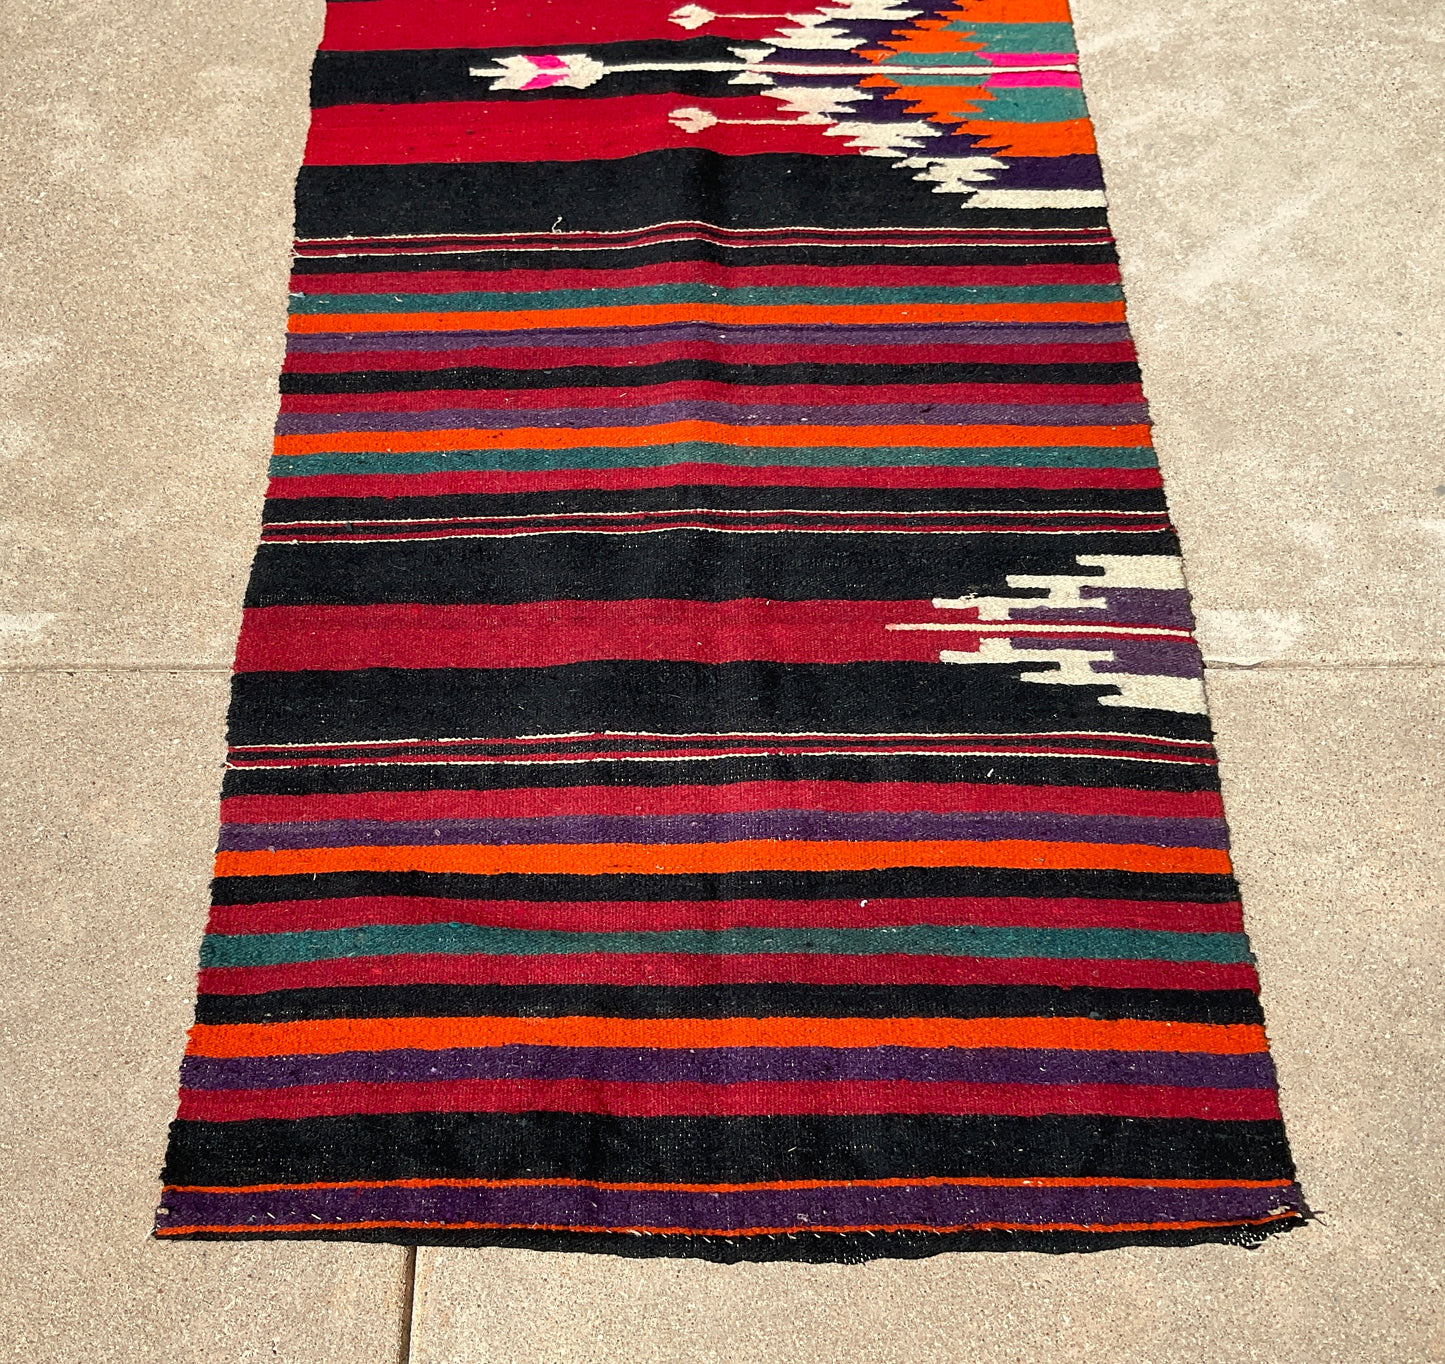 Southwestern Style Woven Floor Runner / Rug, 92"x31"